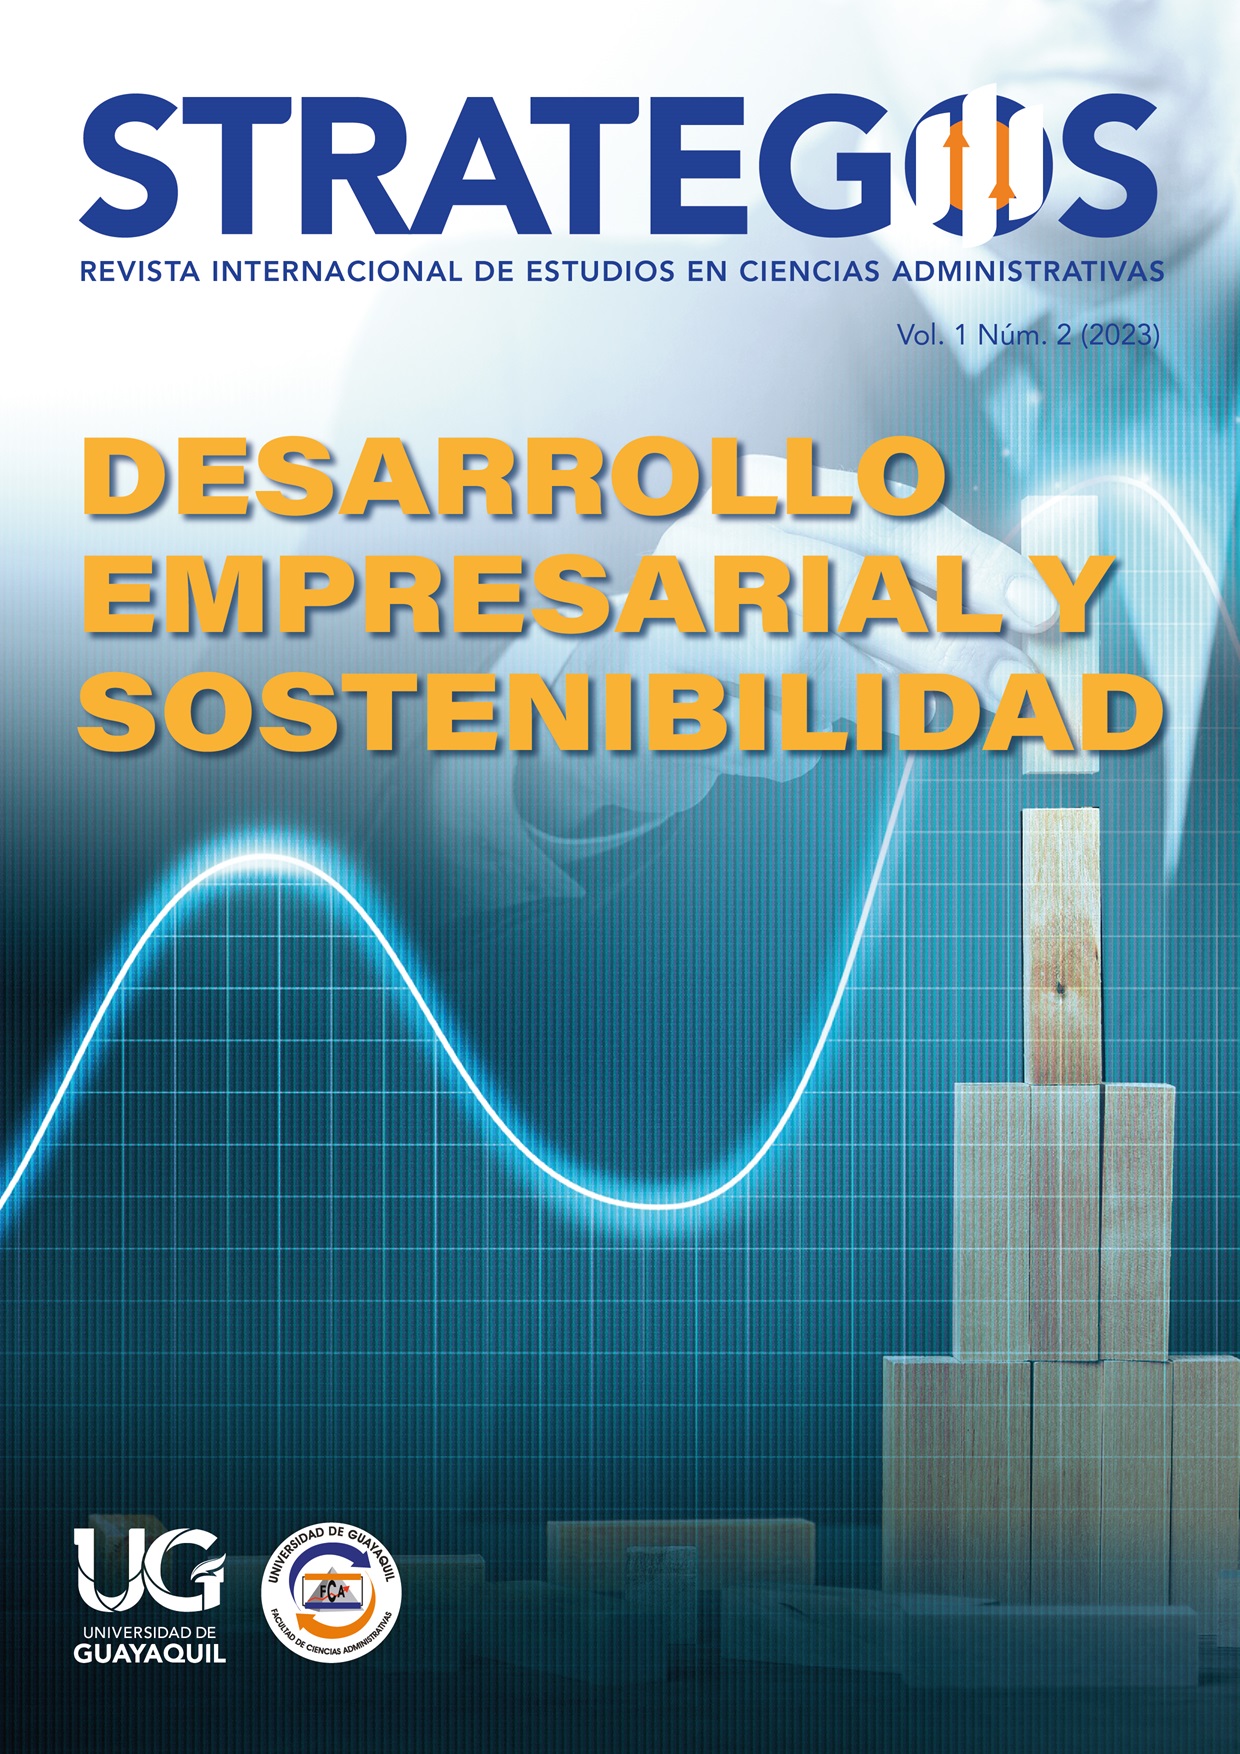 STRATEGOS -  Revista Internacional de Estudios en Ciencias Administrativas